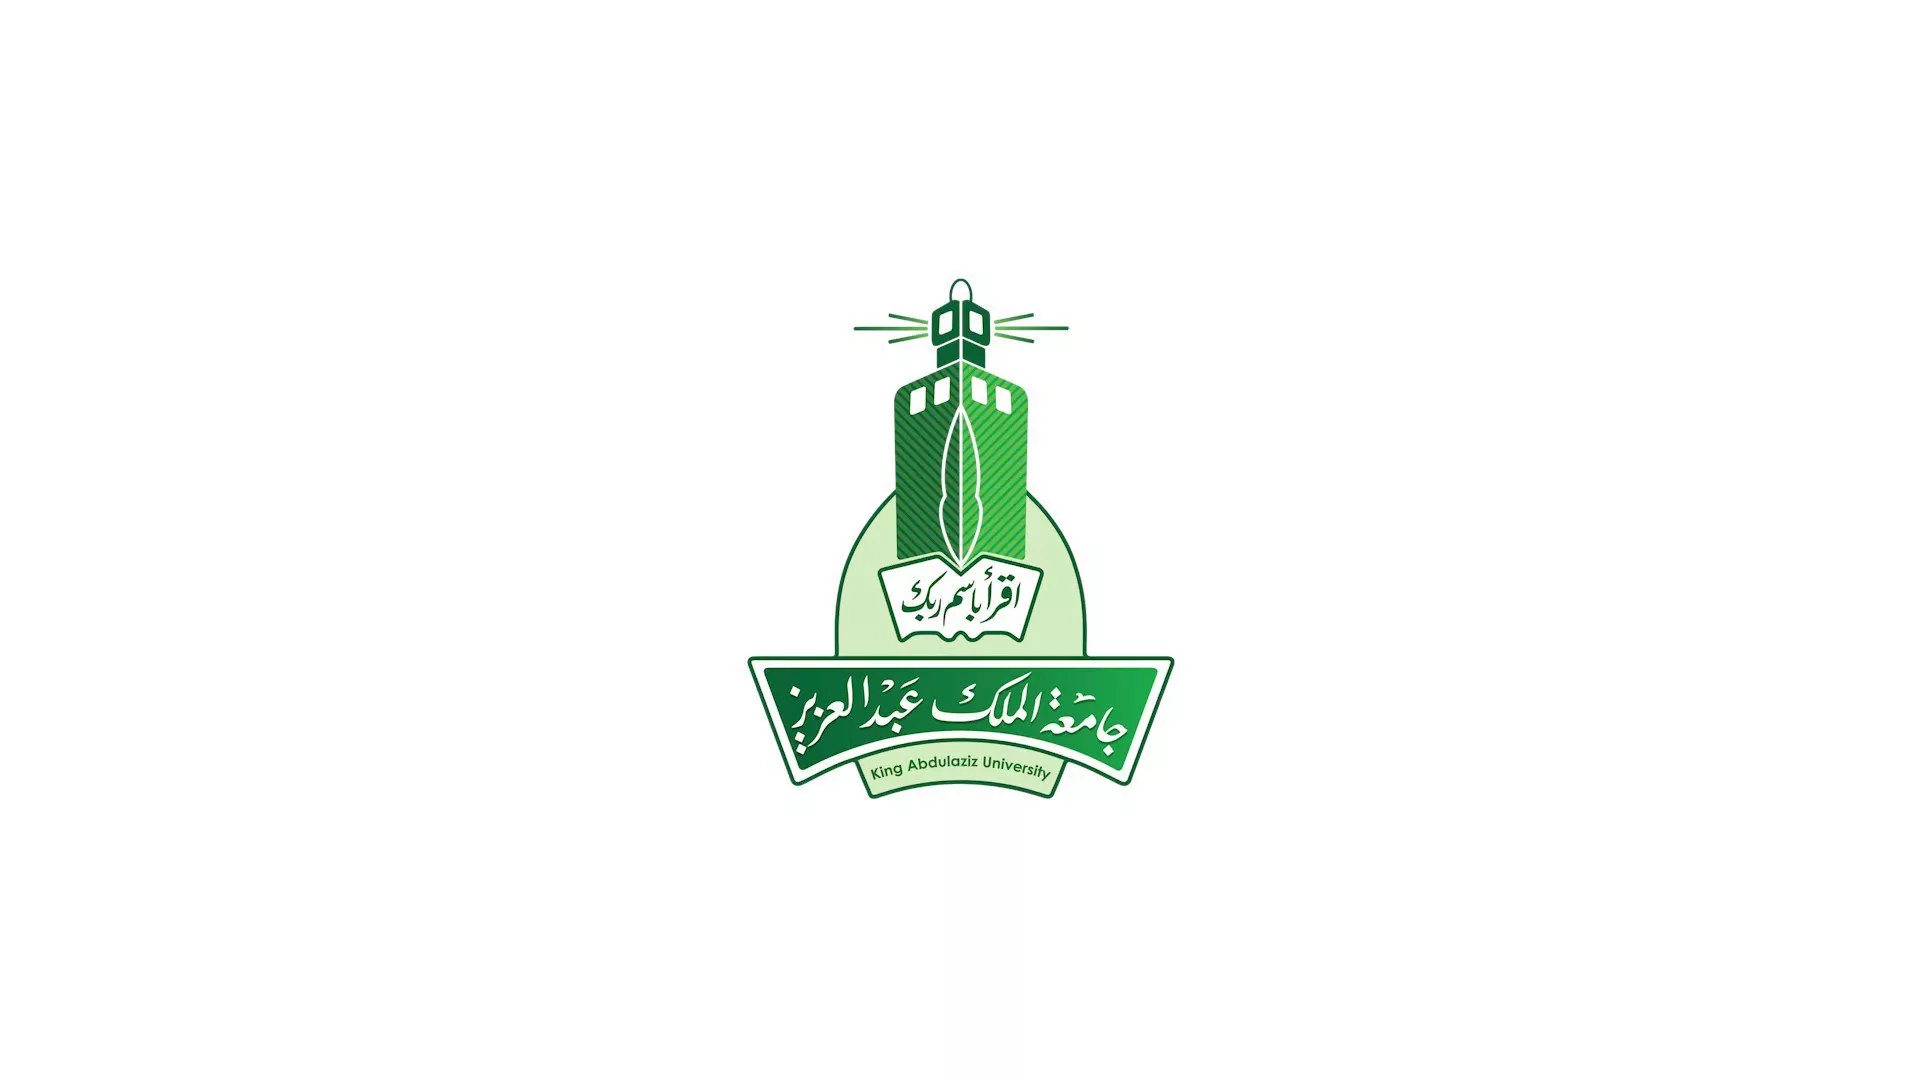 ما هي ابرز تخصصات جامعة الملك عبد العزيز؟